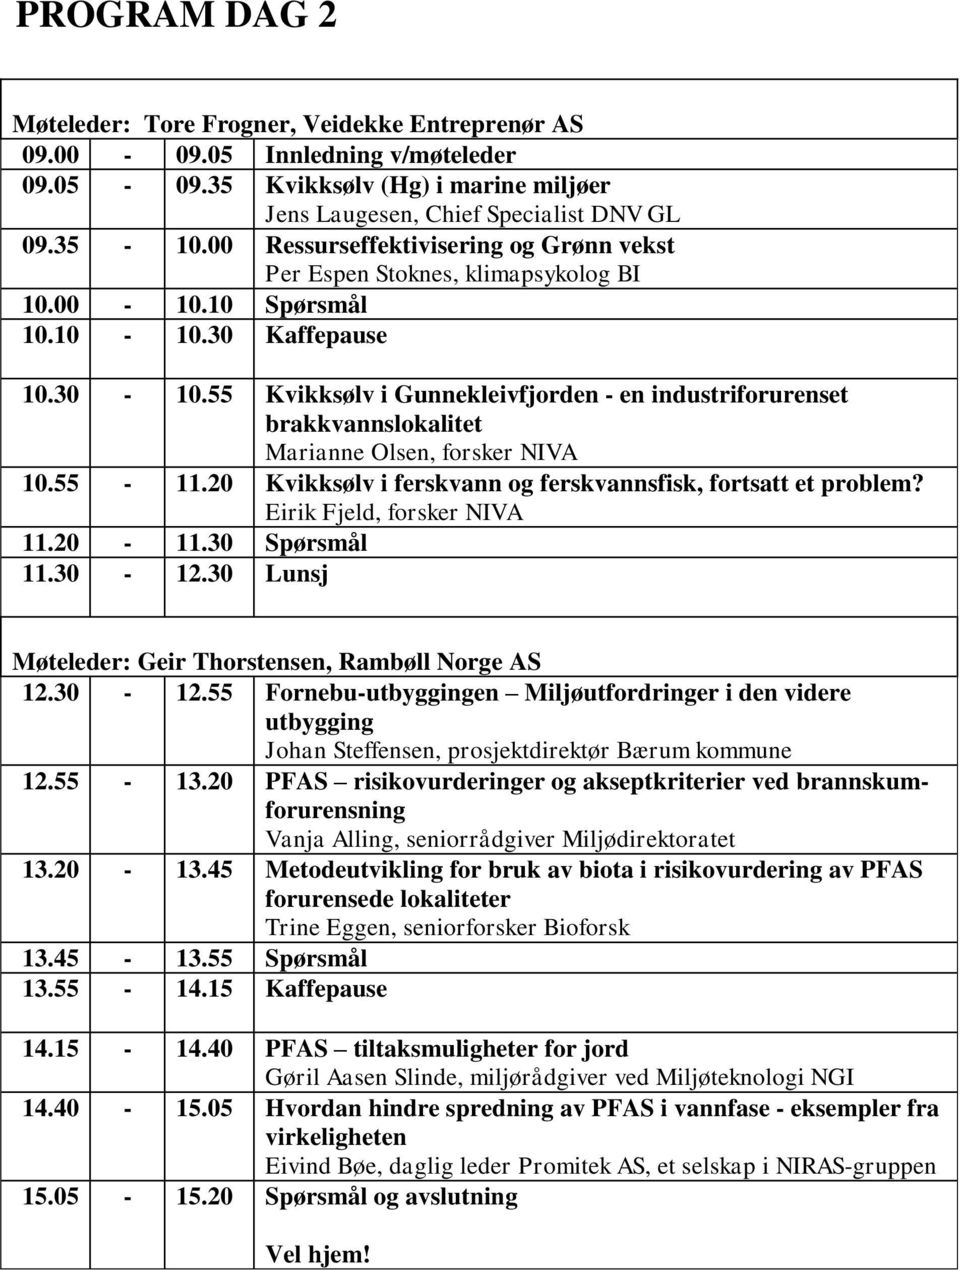 55 Kvikksølv i Gunnekleivfjorden - en industriforurenset brakkvannslokalitet Marianne Olsen, forsker NIVA 10.55-11.20 Kvikksølv i ferskvann og ferskvannsfisk, fortsatt et problem?